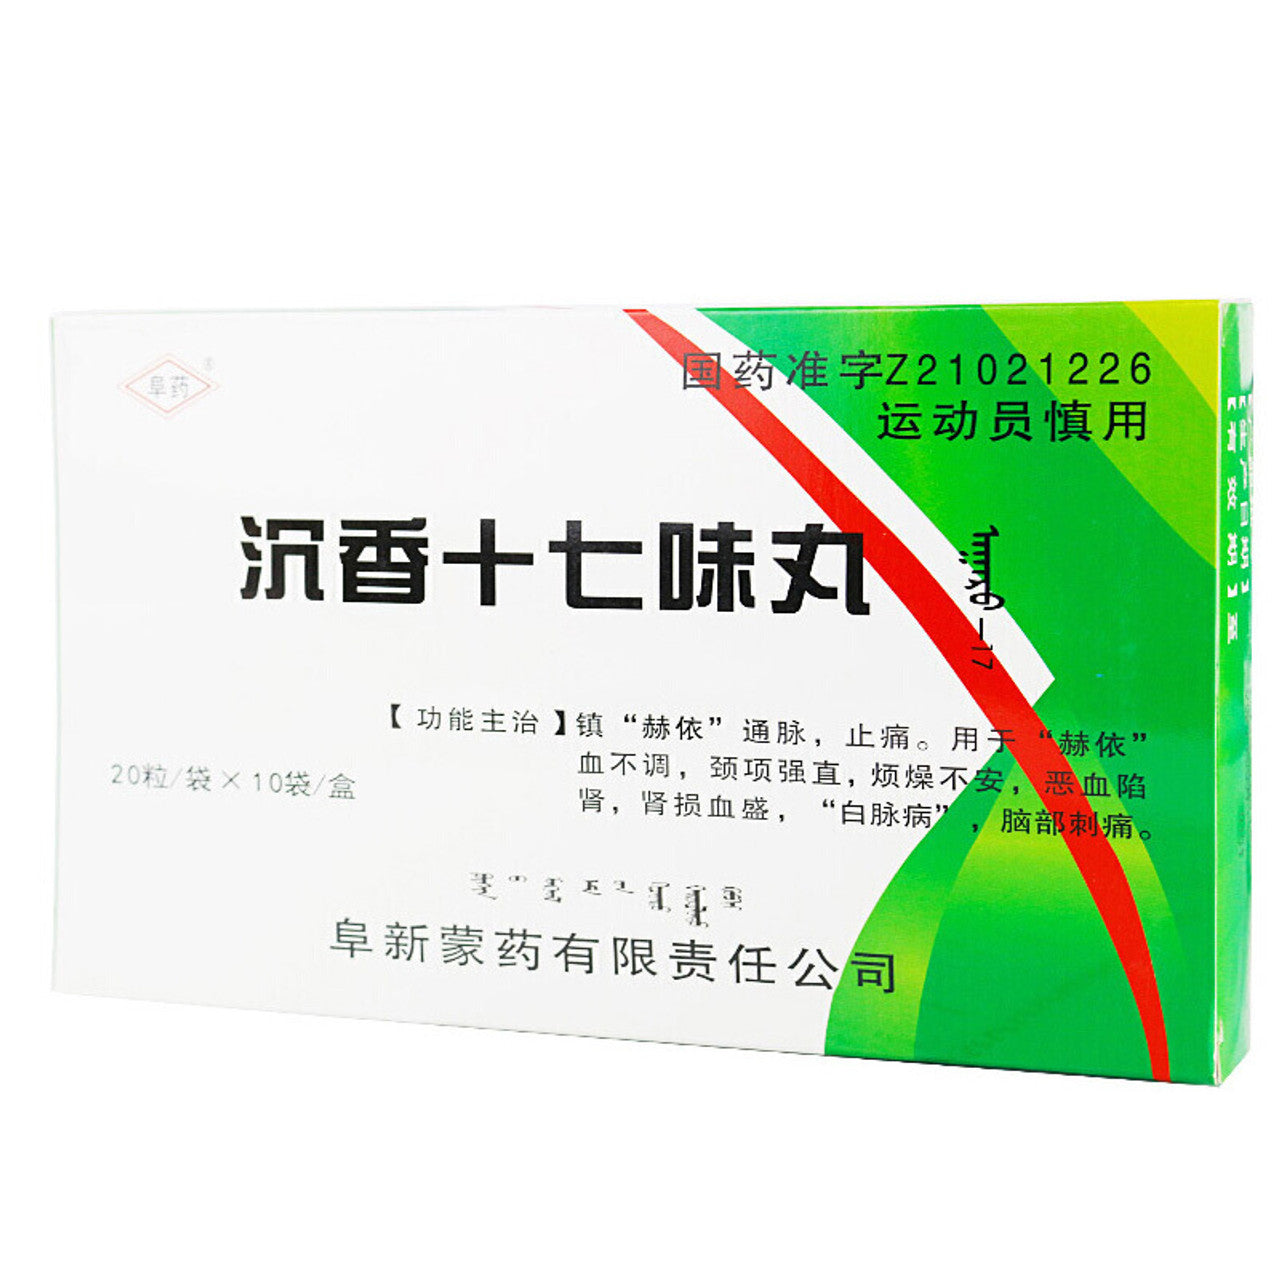 China Herb. Brand Fu Yao. Chenxiang Shiqiwei Wan or Chen Xiang Shi Qi Wei Wan or Chenxiang Shiqiwei Pills or Chen Xiang Shi Qi Wei Pills for Headache Migraine. agarwood seventeen flavor pills